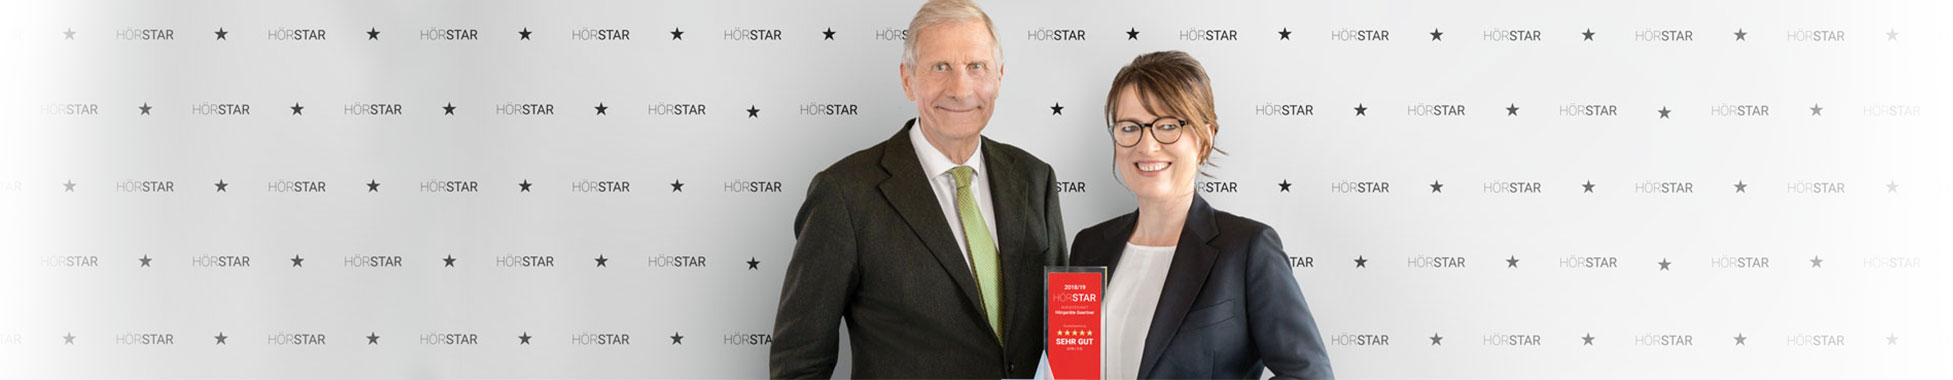 Ulrich Wickert überreicht den Kundenpreis Premium-HörStar